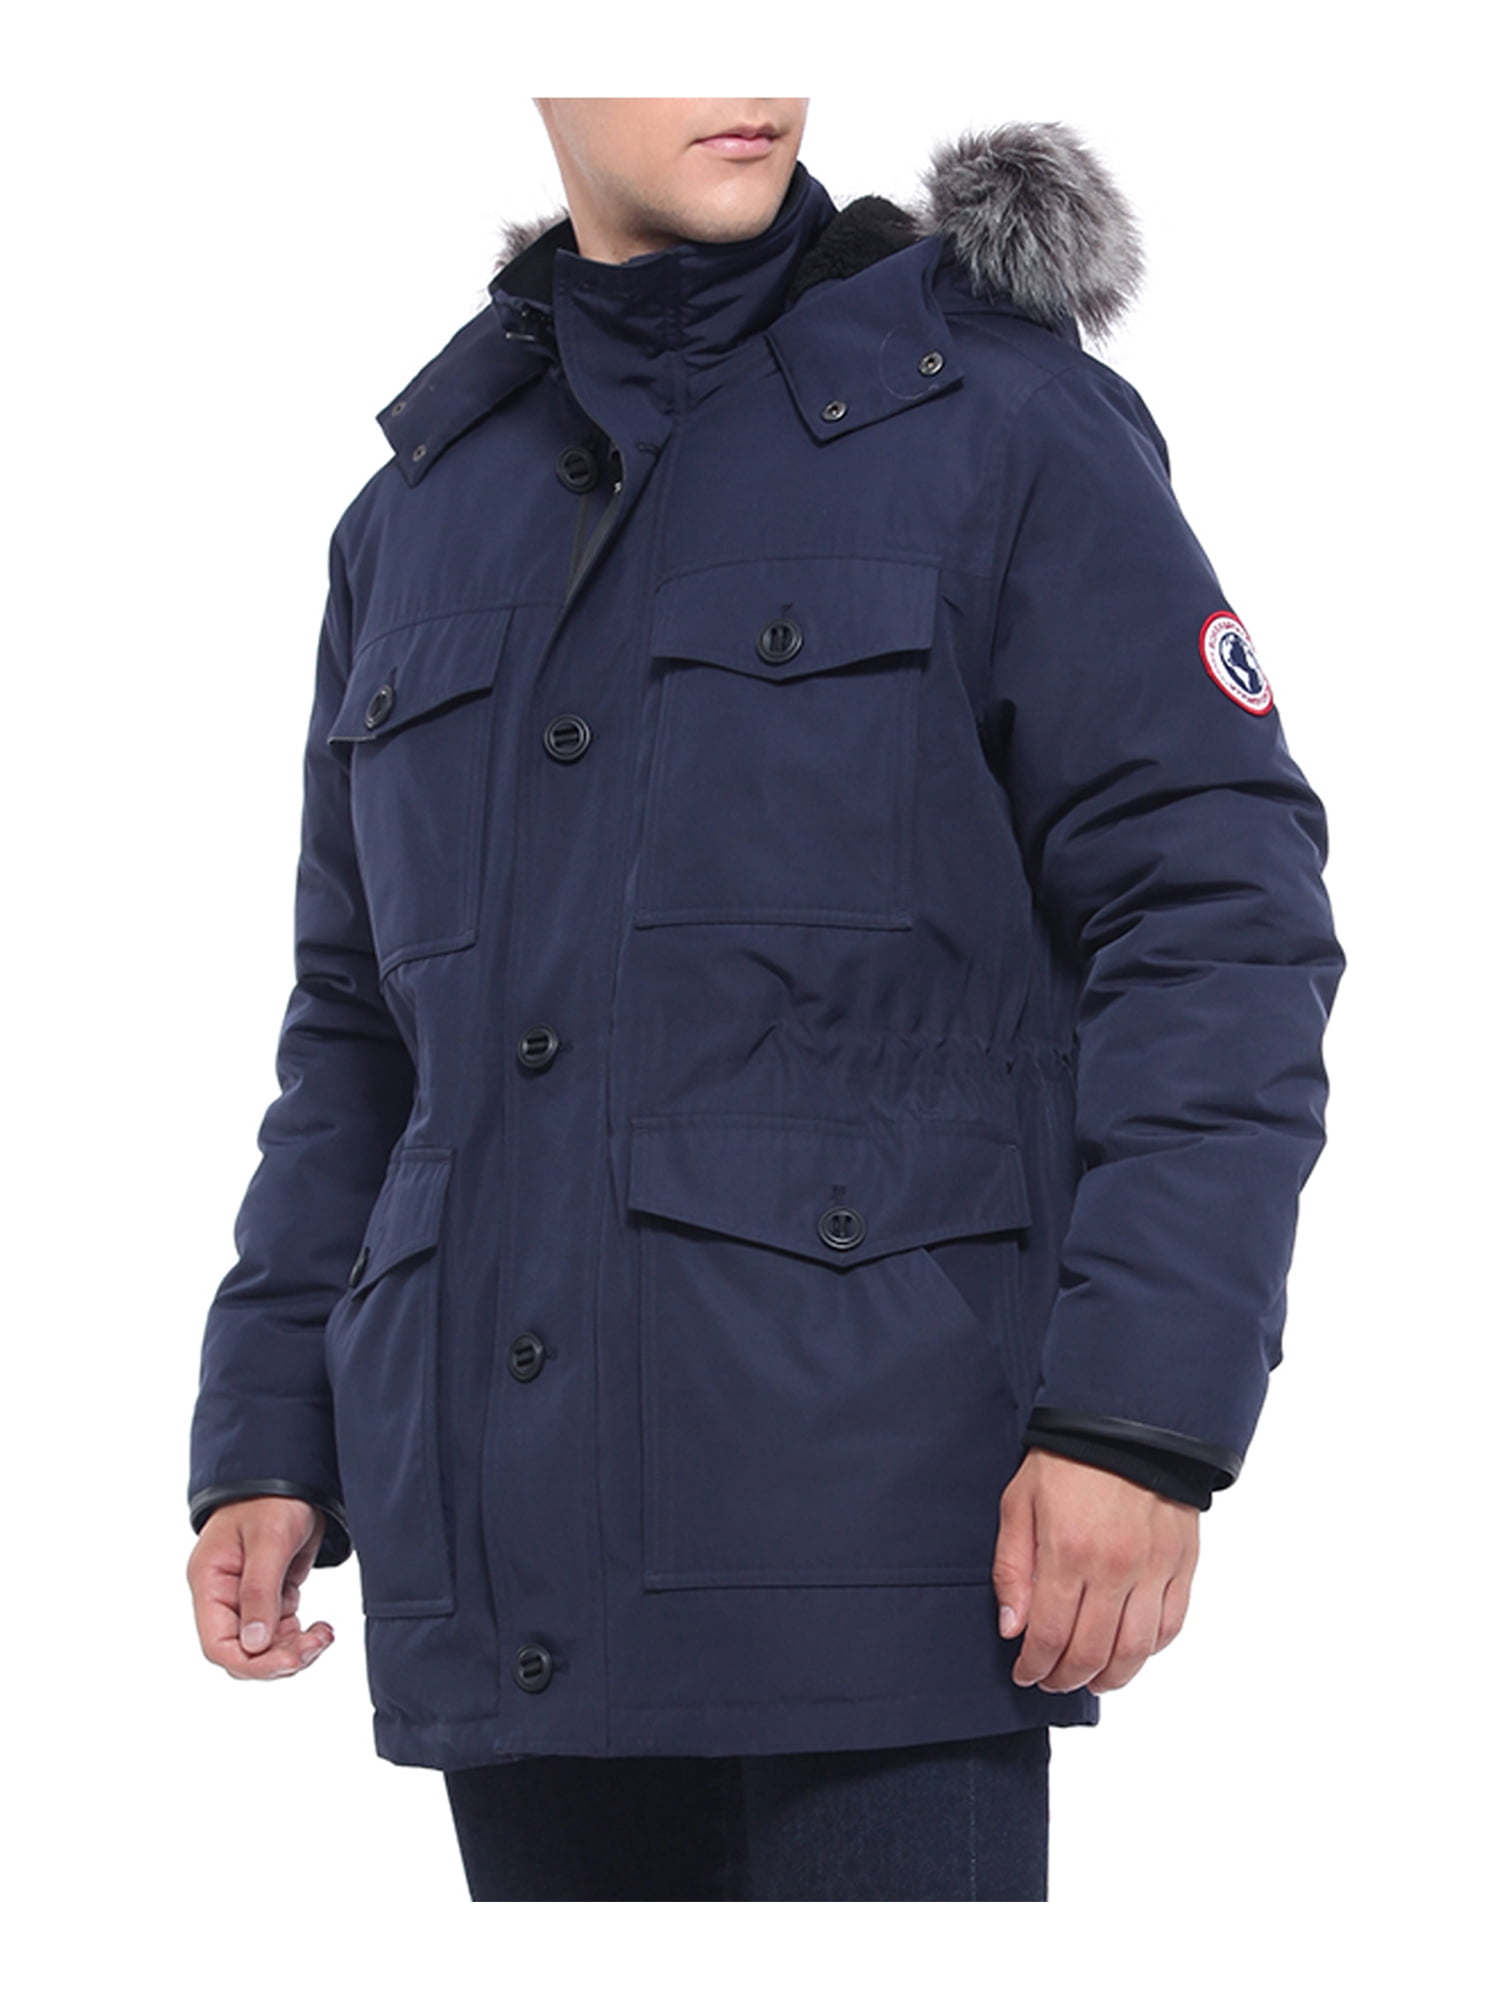 Coat Winter Outwear Men's Jacket Overcoat Padded Parka Hooded Thicken Faux Fur 